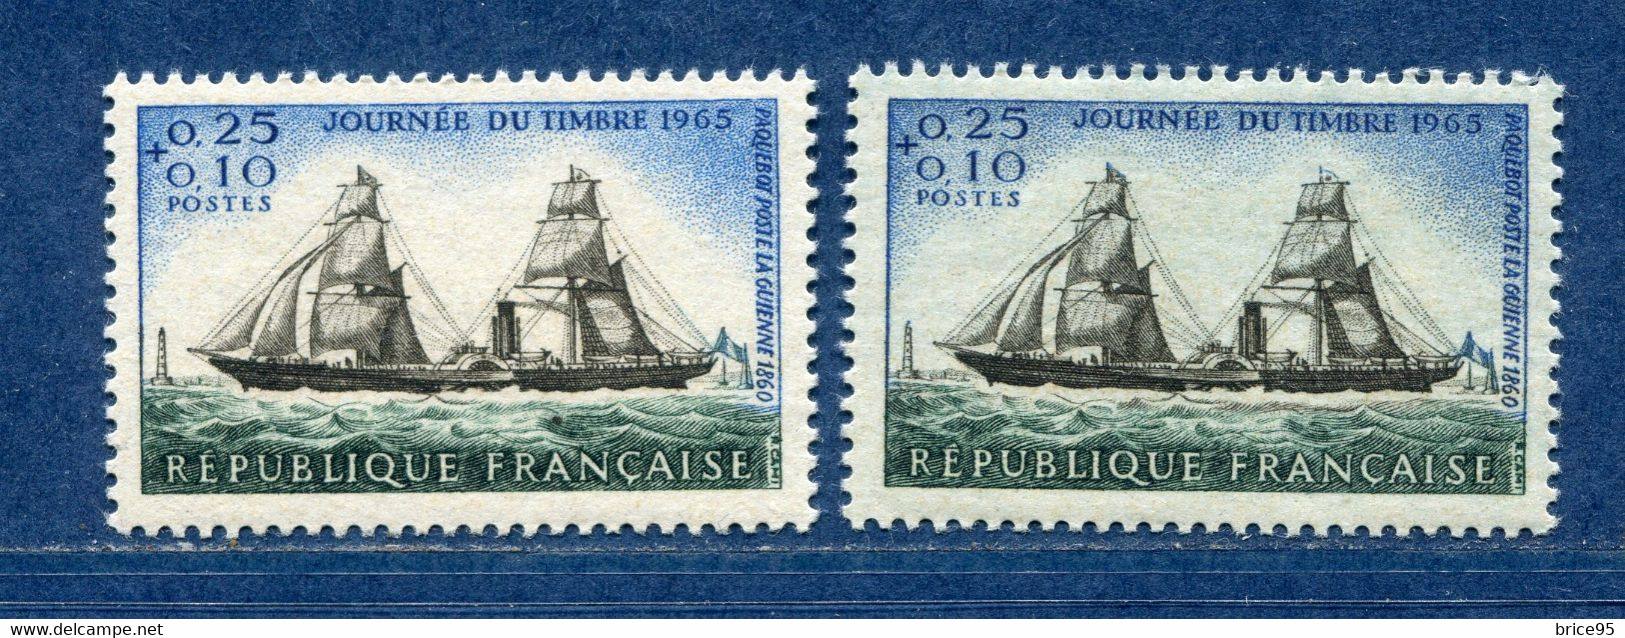 ⭐ France - Variété - YT N° 1546 - Couleurs - Pétouilles - Neuf Sans Charnière - 1965 ⭐ - Unused Stamps